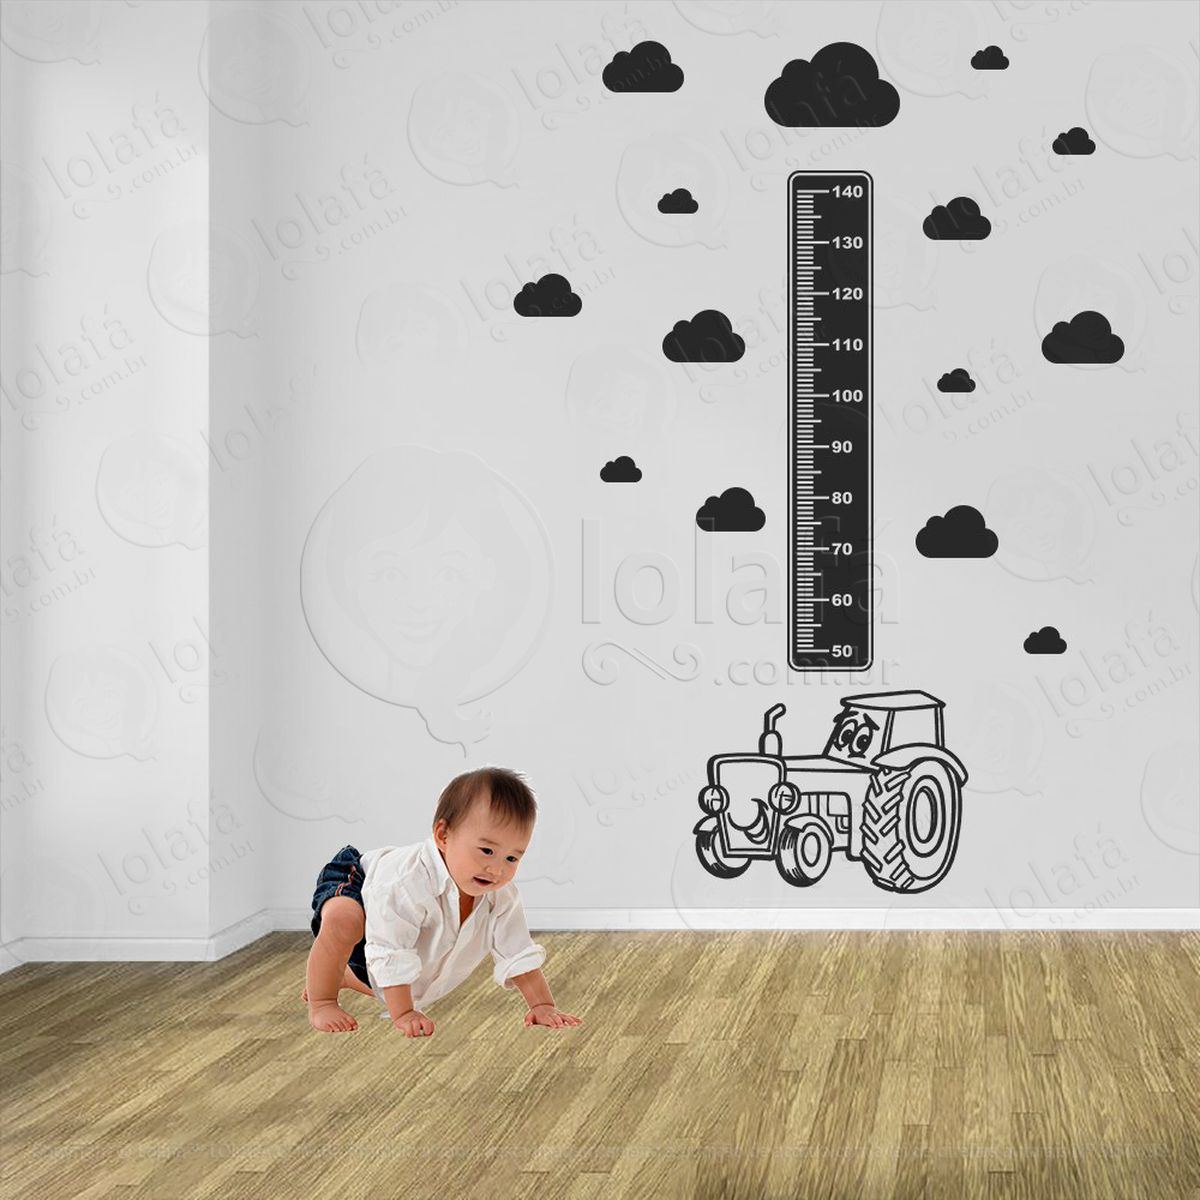 tratô e nuvens adesivo régua de crescimento infantil, medidor de altura para quarto, porta e parede - mod:1427